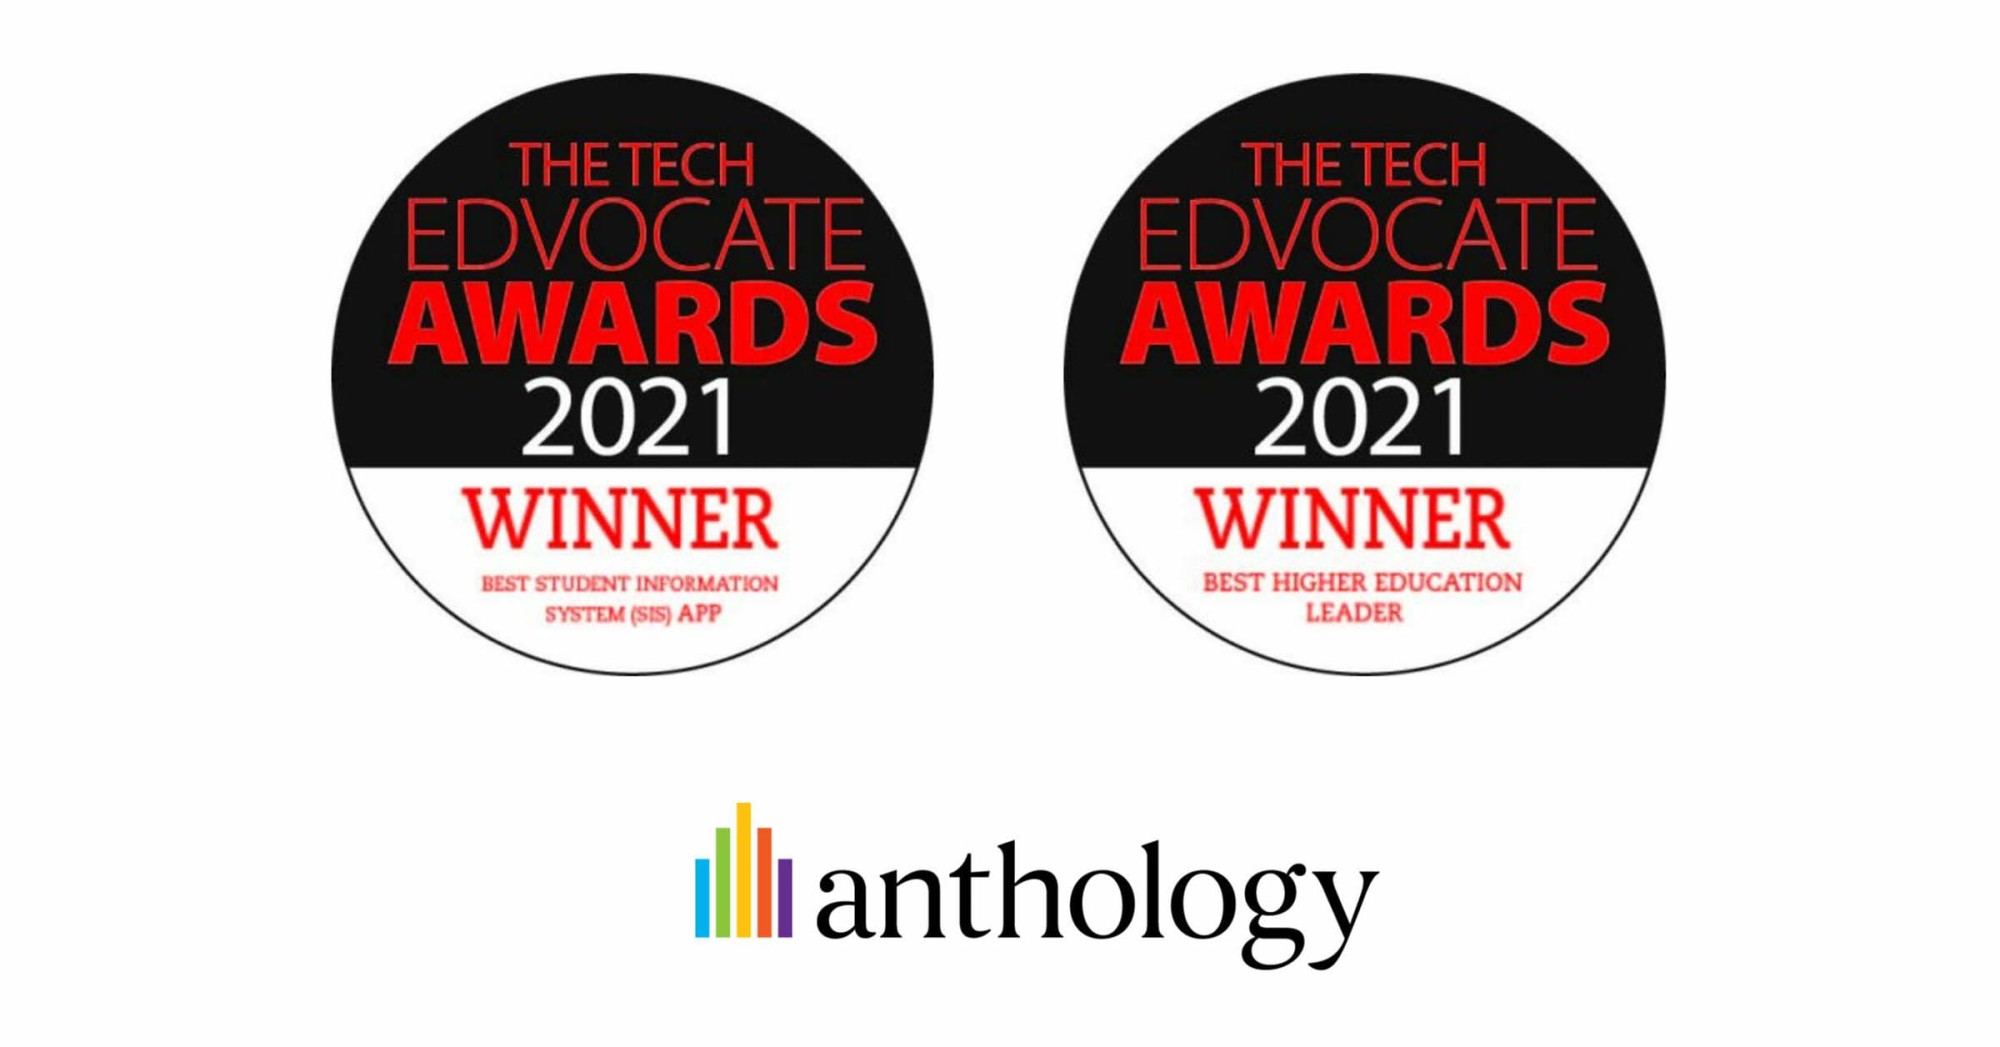 Tech Advocate Awards images alongside the Anthology logo